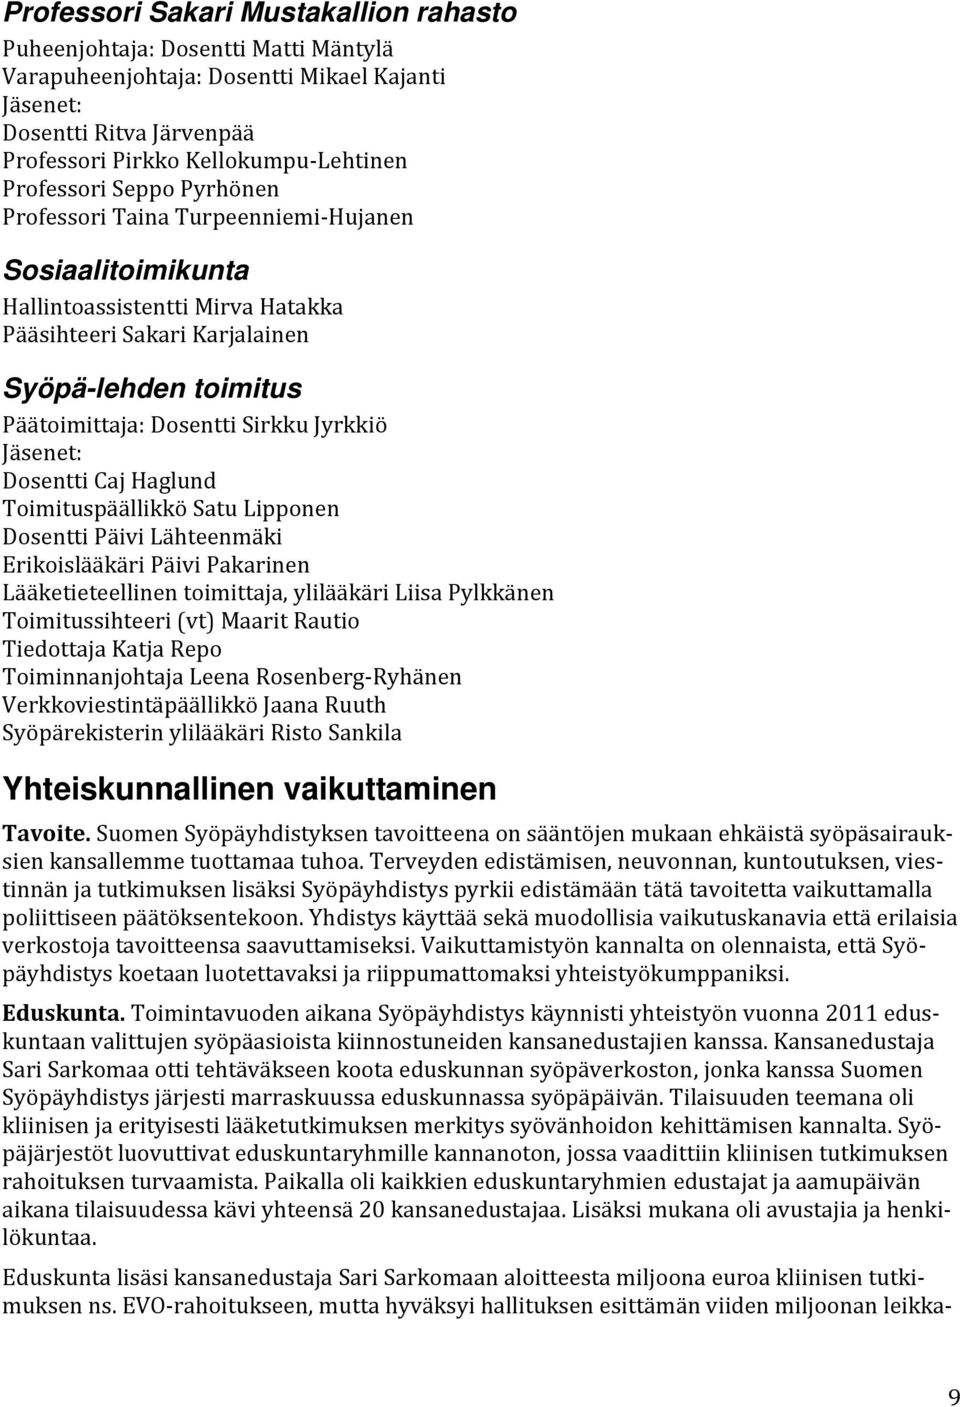 Sirkku Jyrkkiö Jäsenet: Dosentti Caj Haglund Toimituspäällikkö Satu Lipponen Dosentti Päivi Lähteenmäki Erikoislääkäri Päivi Pakarinen Lääketieteellinen toimittaja, ylilääkäri Liisa Pylkkänen